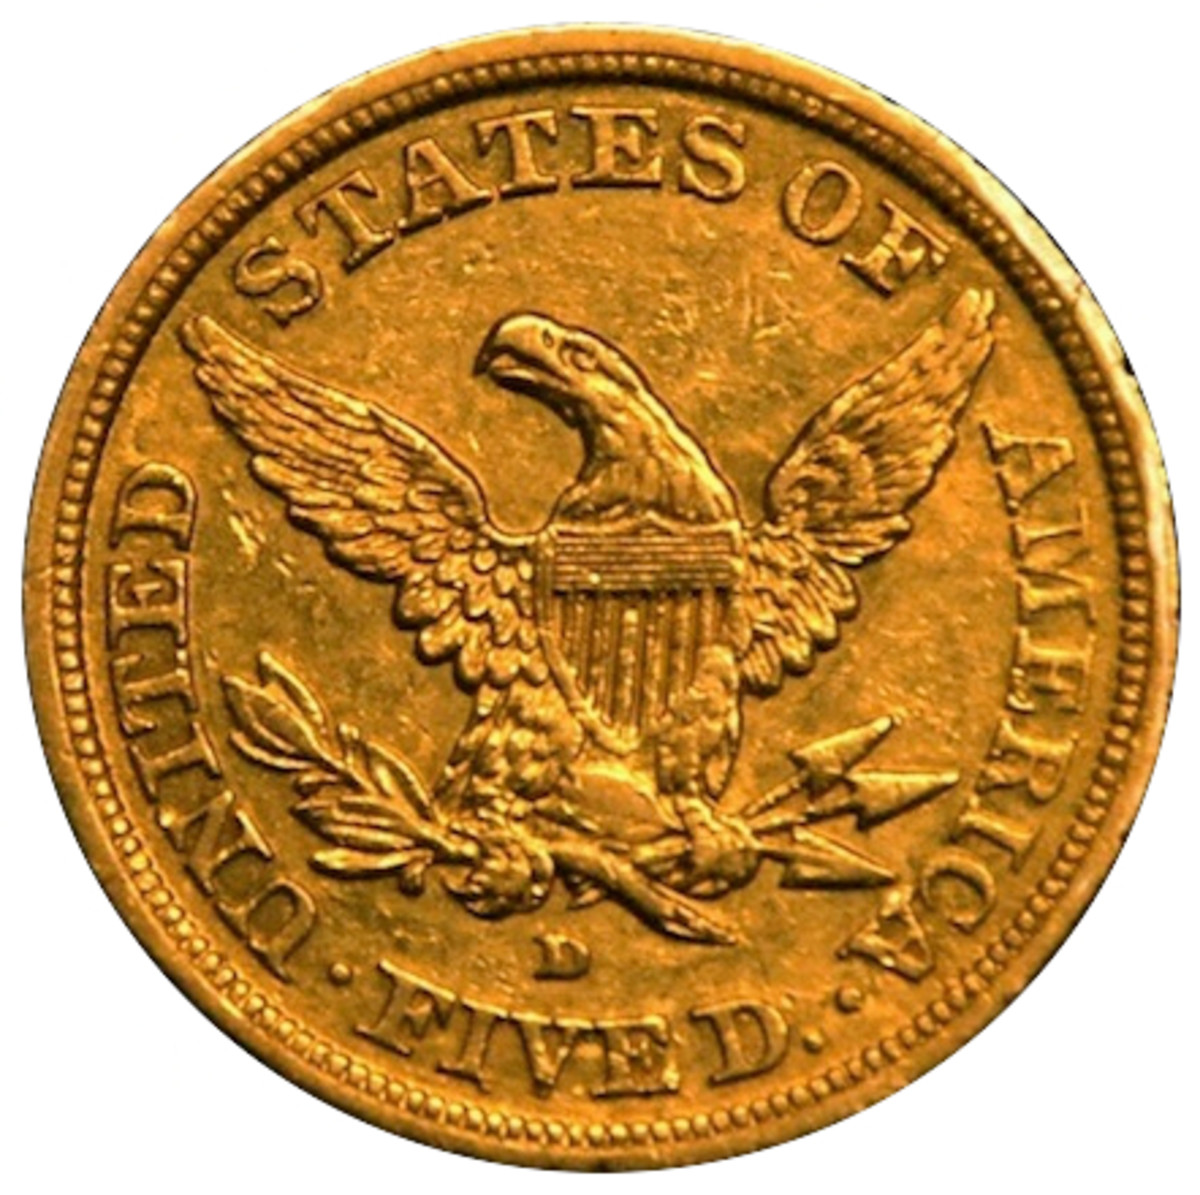 A gold half eagle minted at Dahlonega, Georgia.